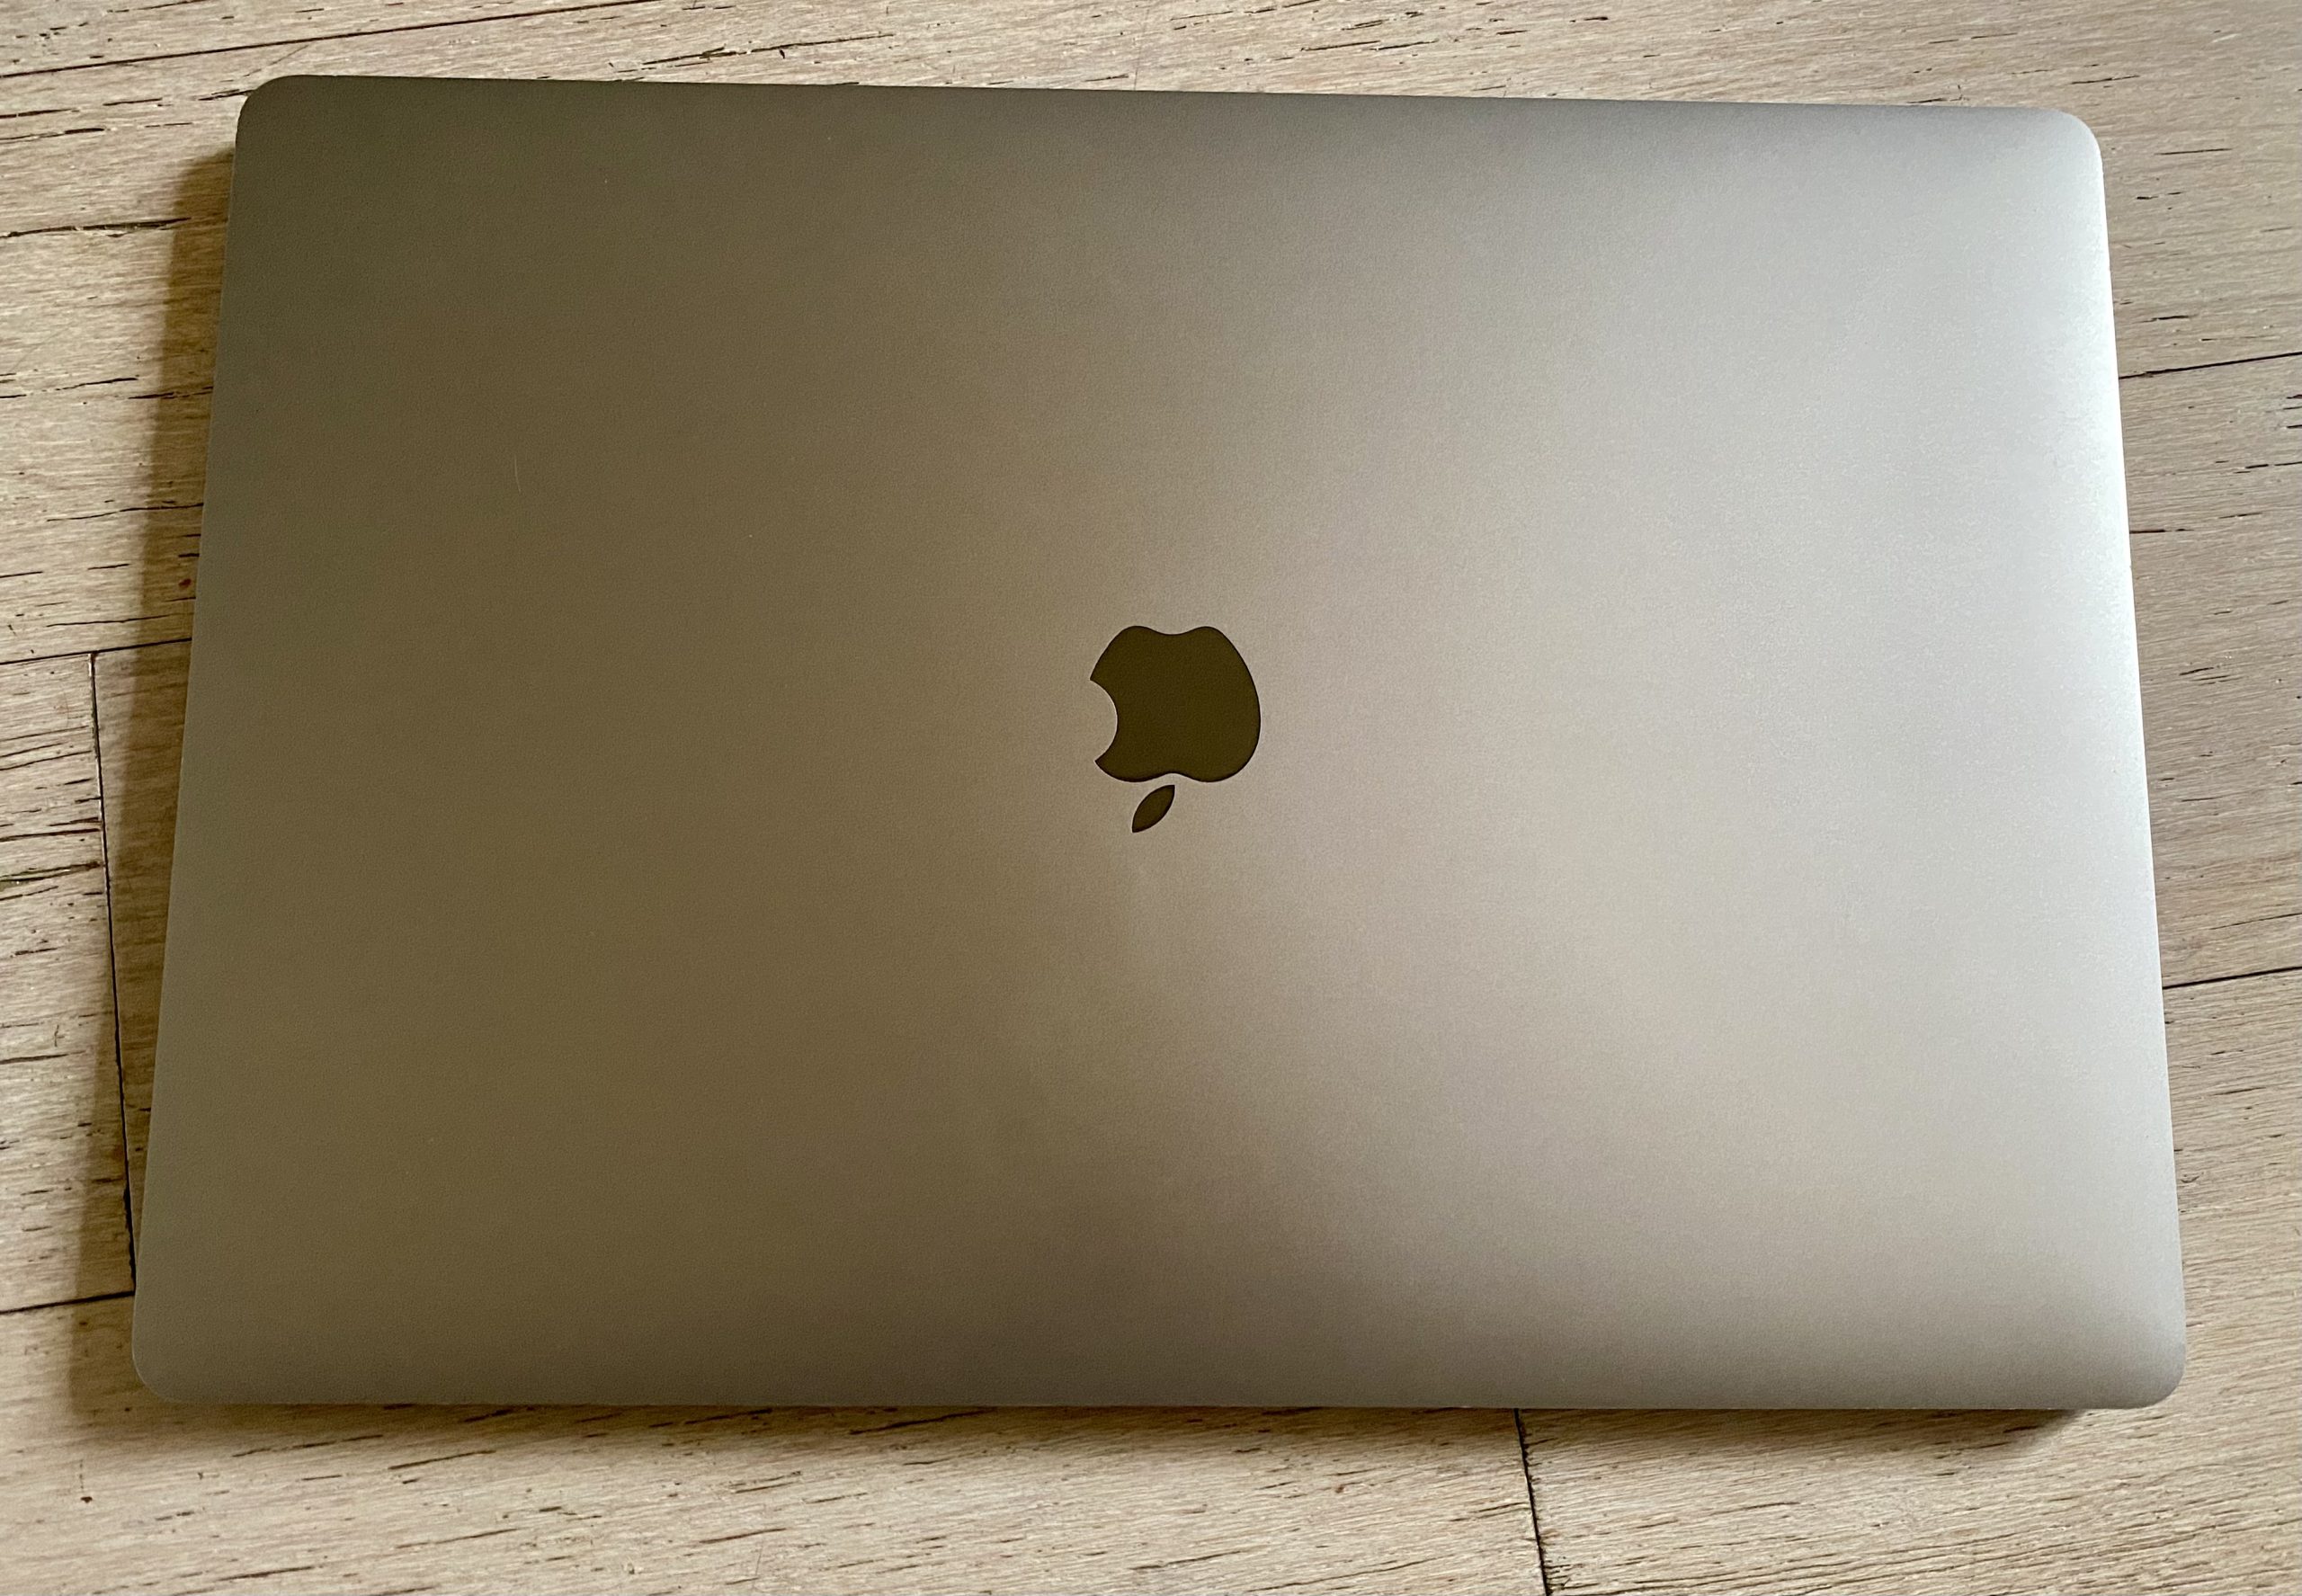 MacBook Pro 16″ i9 2,3 GHz – 32 Go ram – 2 To SSD